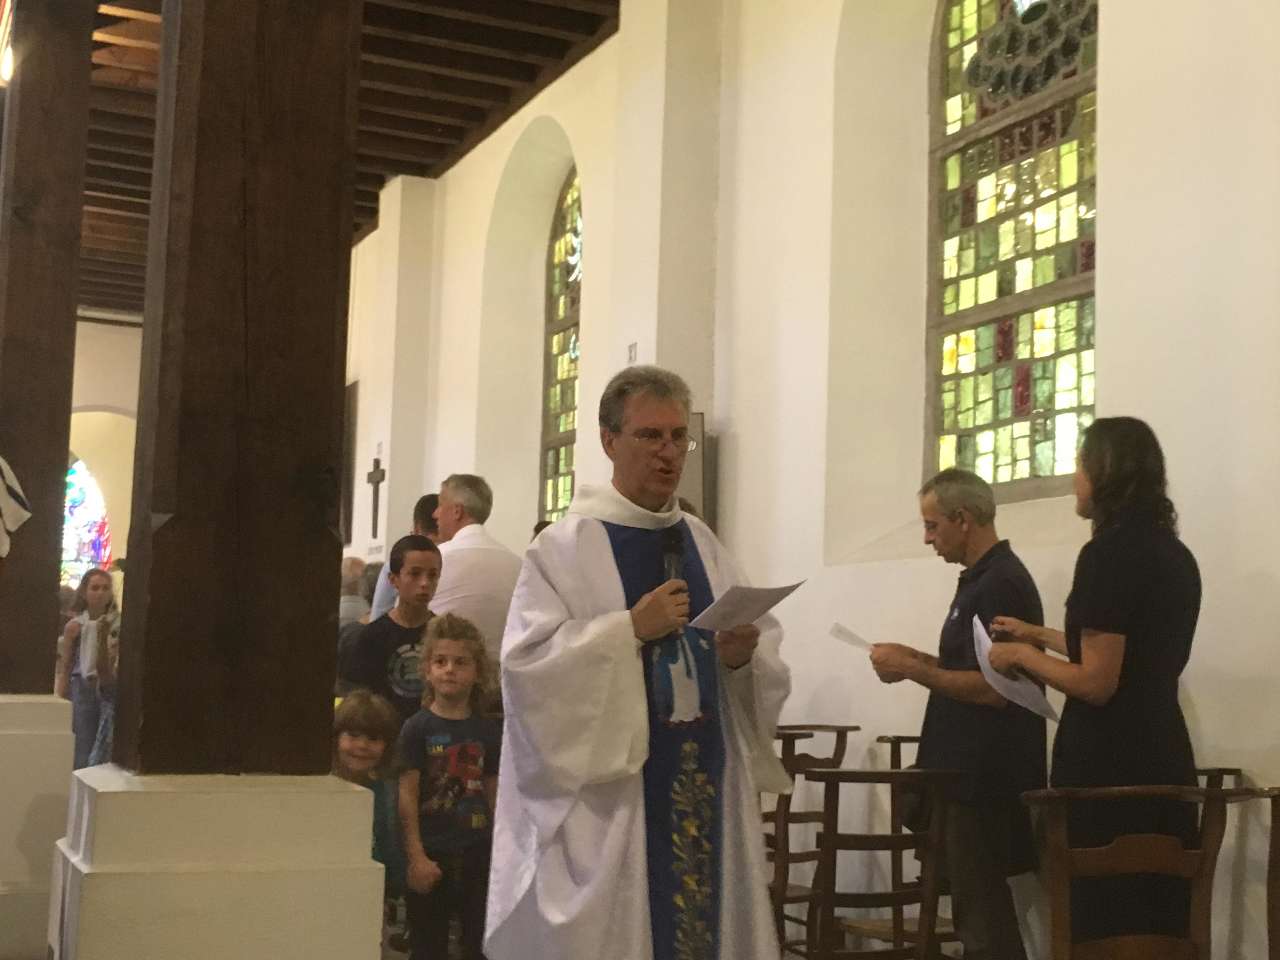 Avec l'abbé Jean-Marc, tout le monde chante " Ave Maria"